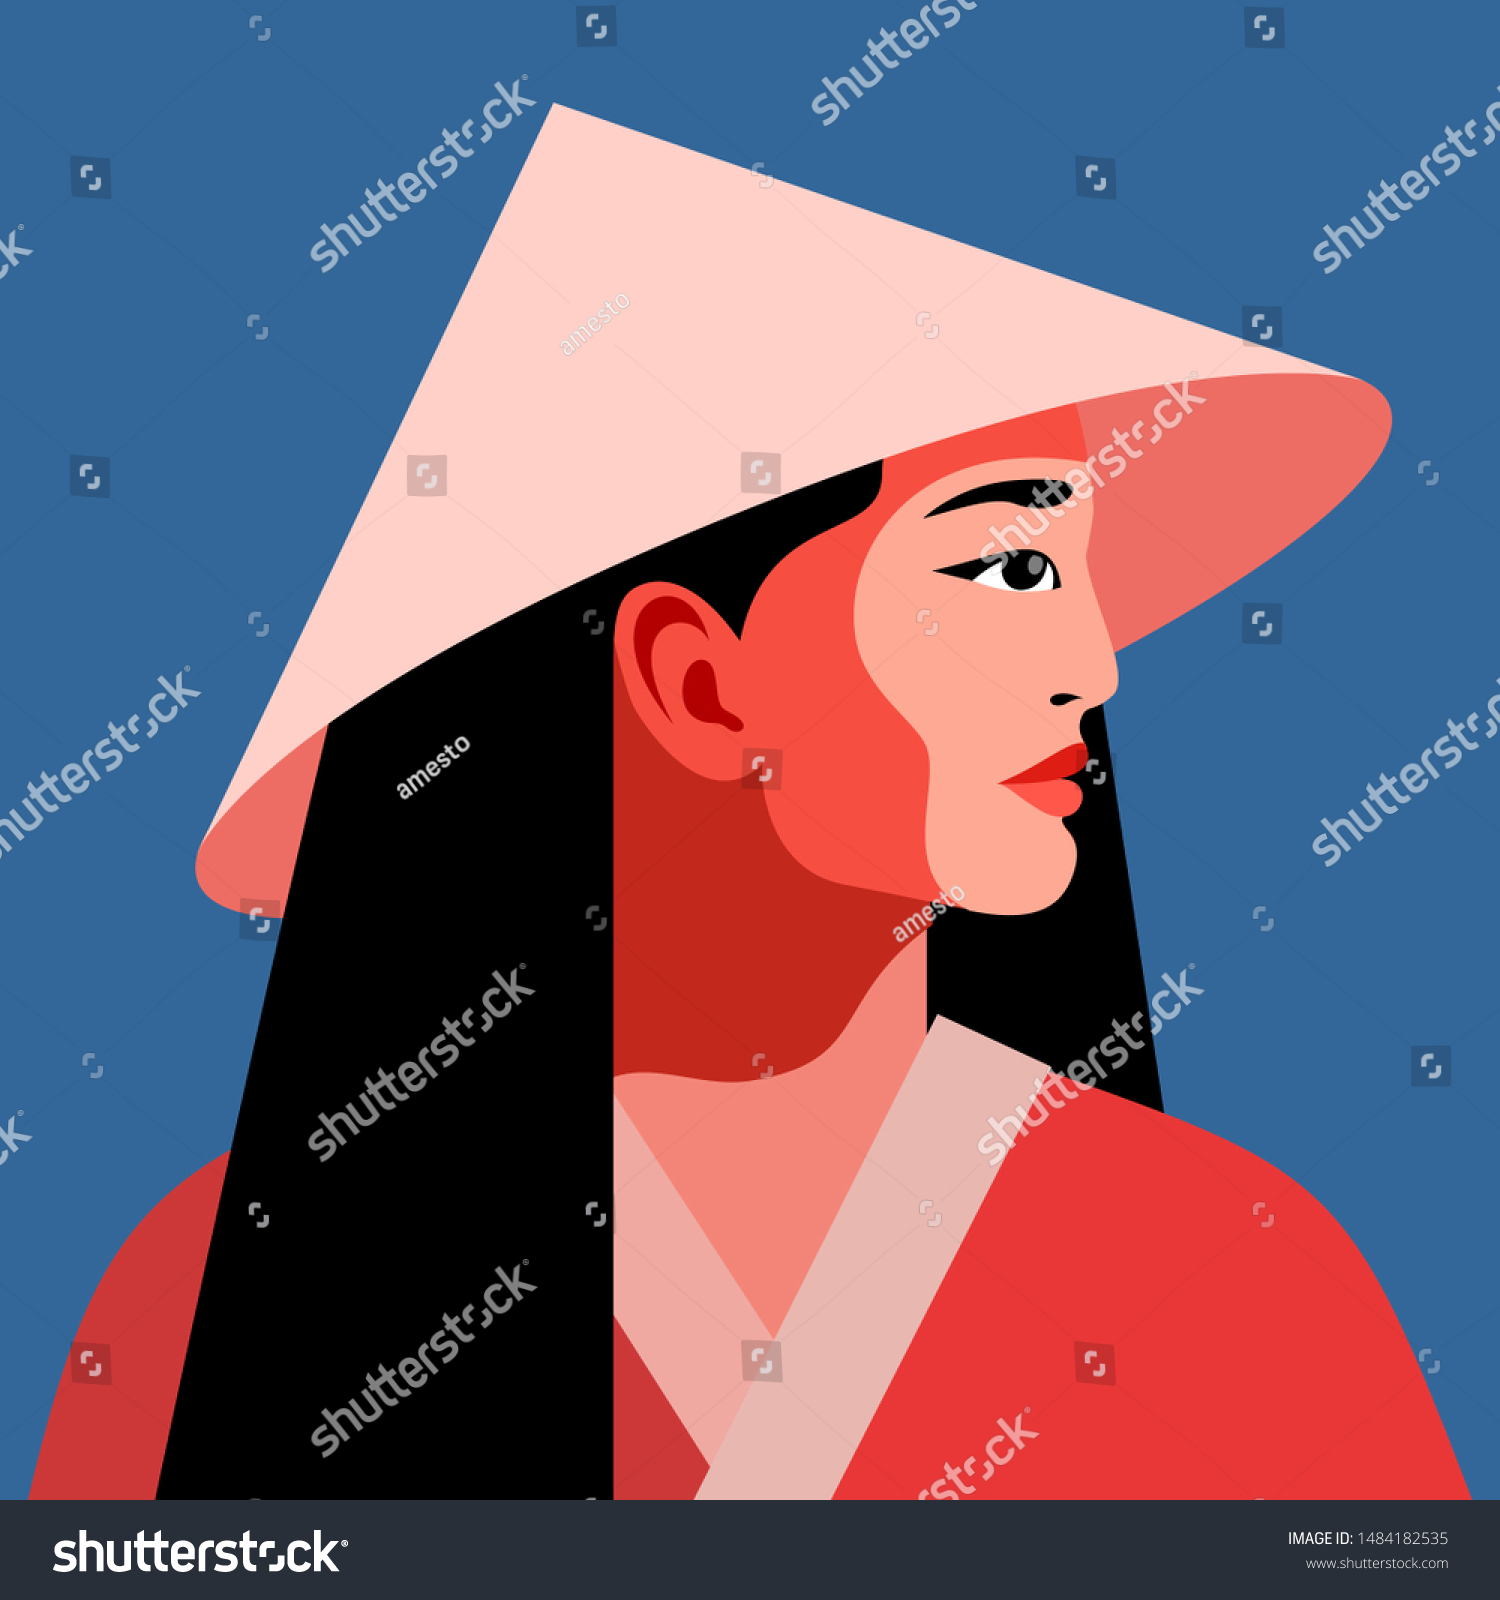 国民的な円錐形の麦わら帽子をかぶったアジア人の女の子 女性のポートレート 側面図 ベクターイラスト のベクター画像素材 ロイヤリティフリー